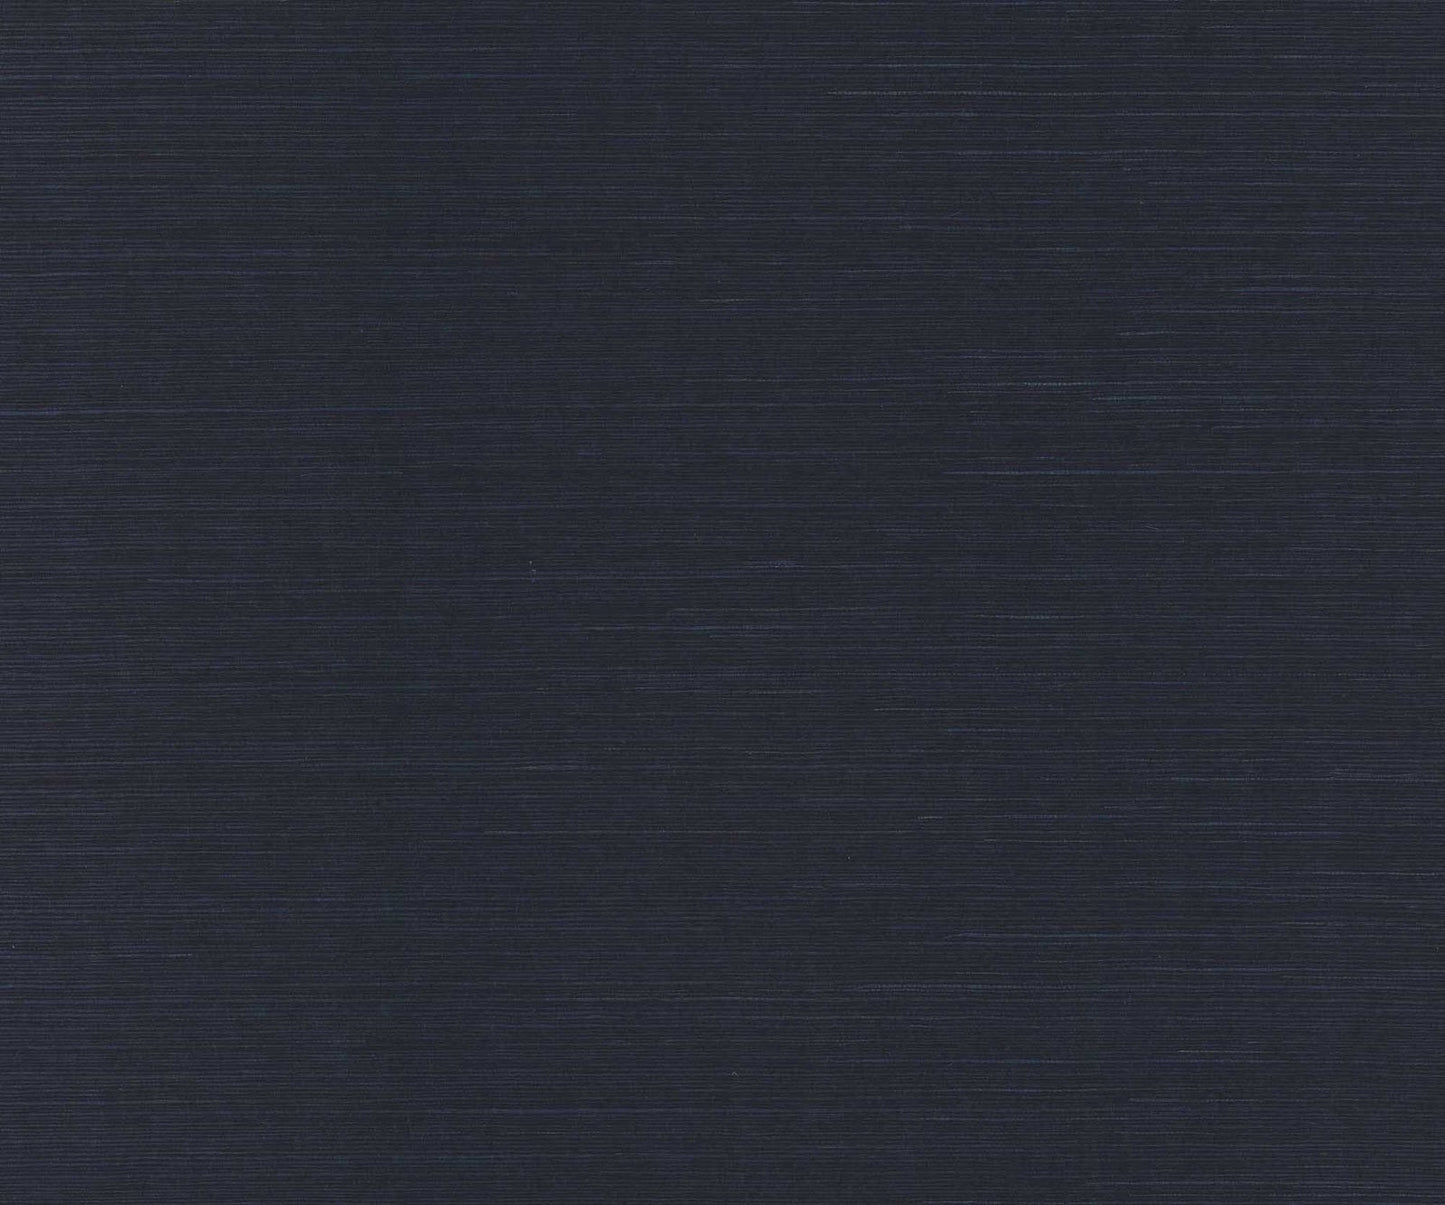 Palette Sisal Wallpaper - Blue - Rifle